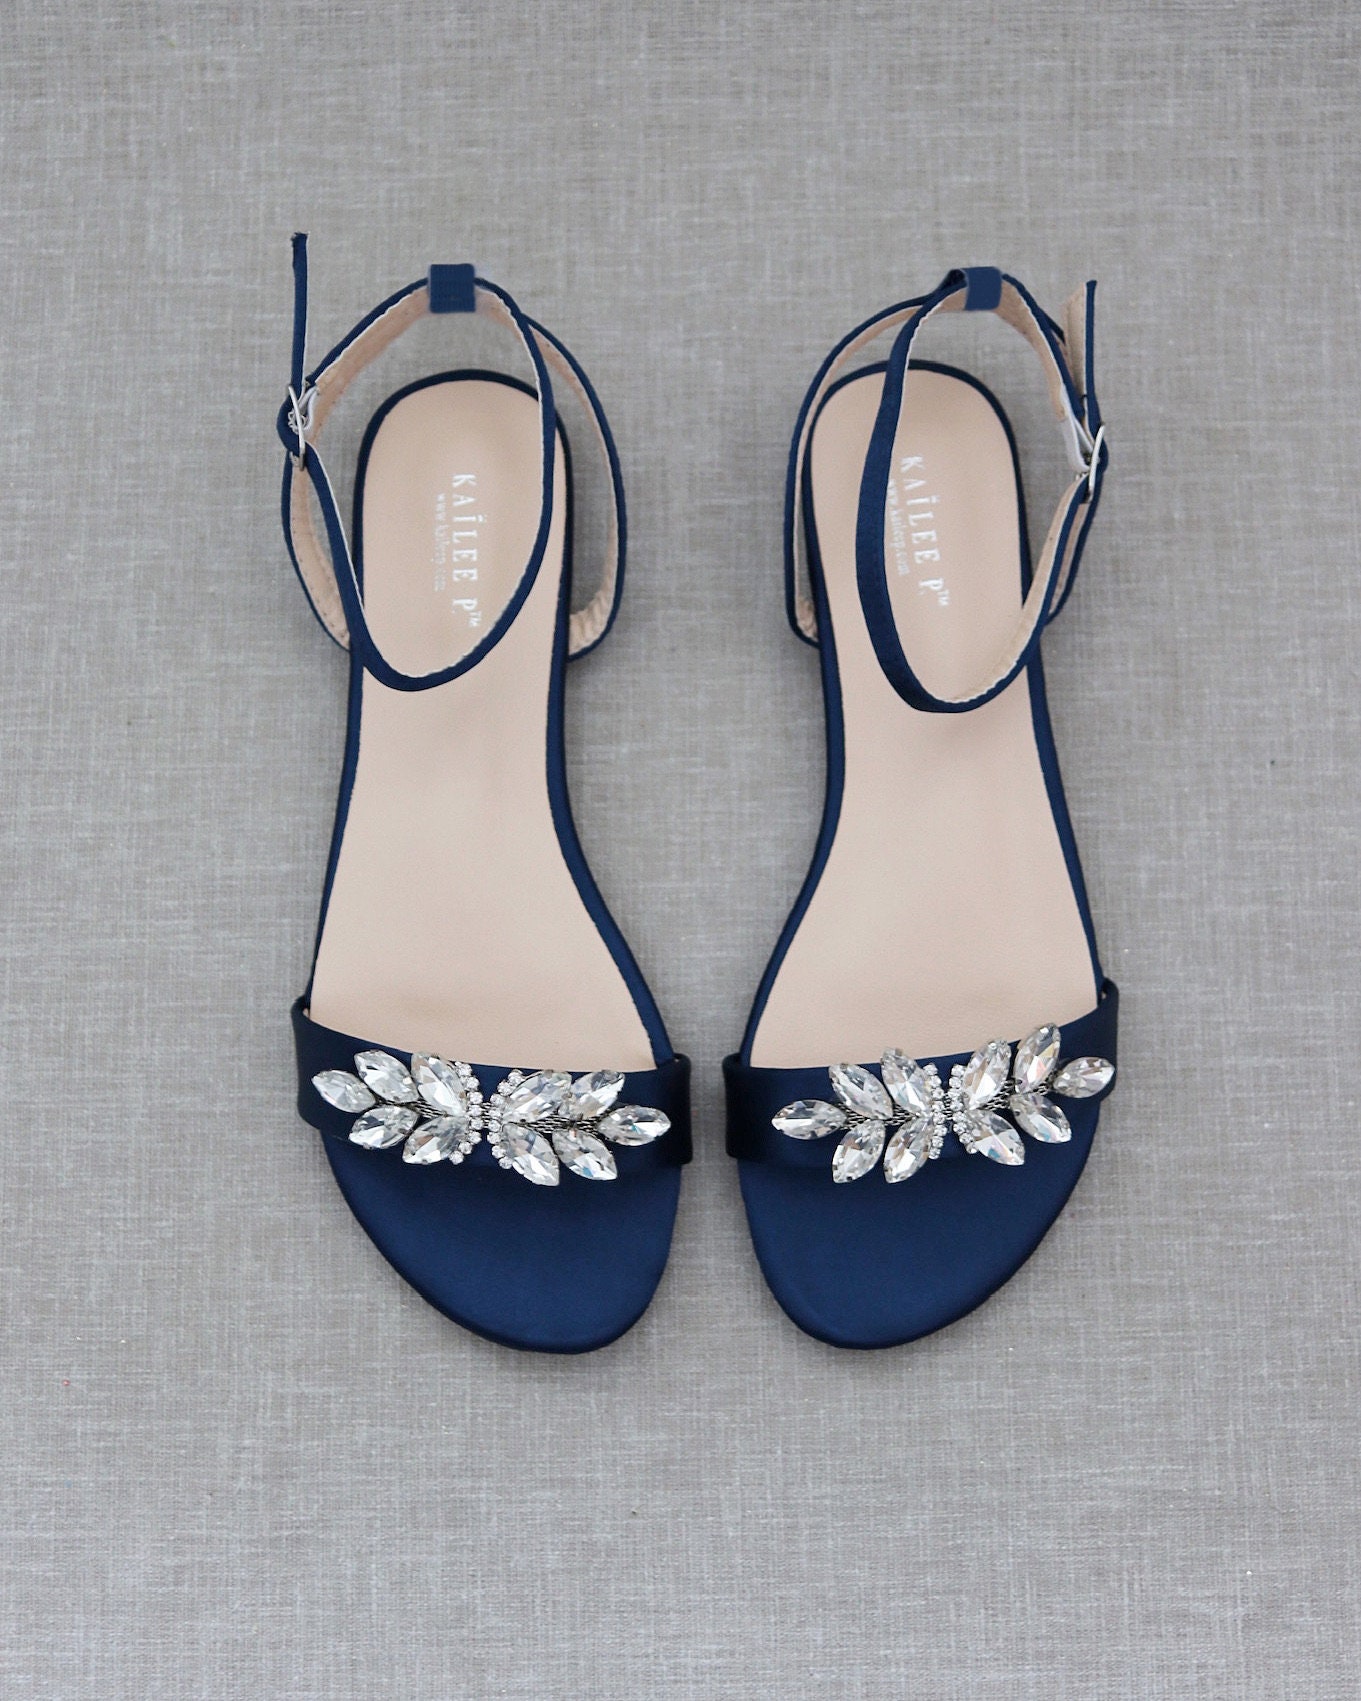 Schoenen Jongensschoenen Sandalen Embroidered Navy Blue Sandals 